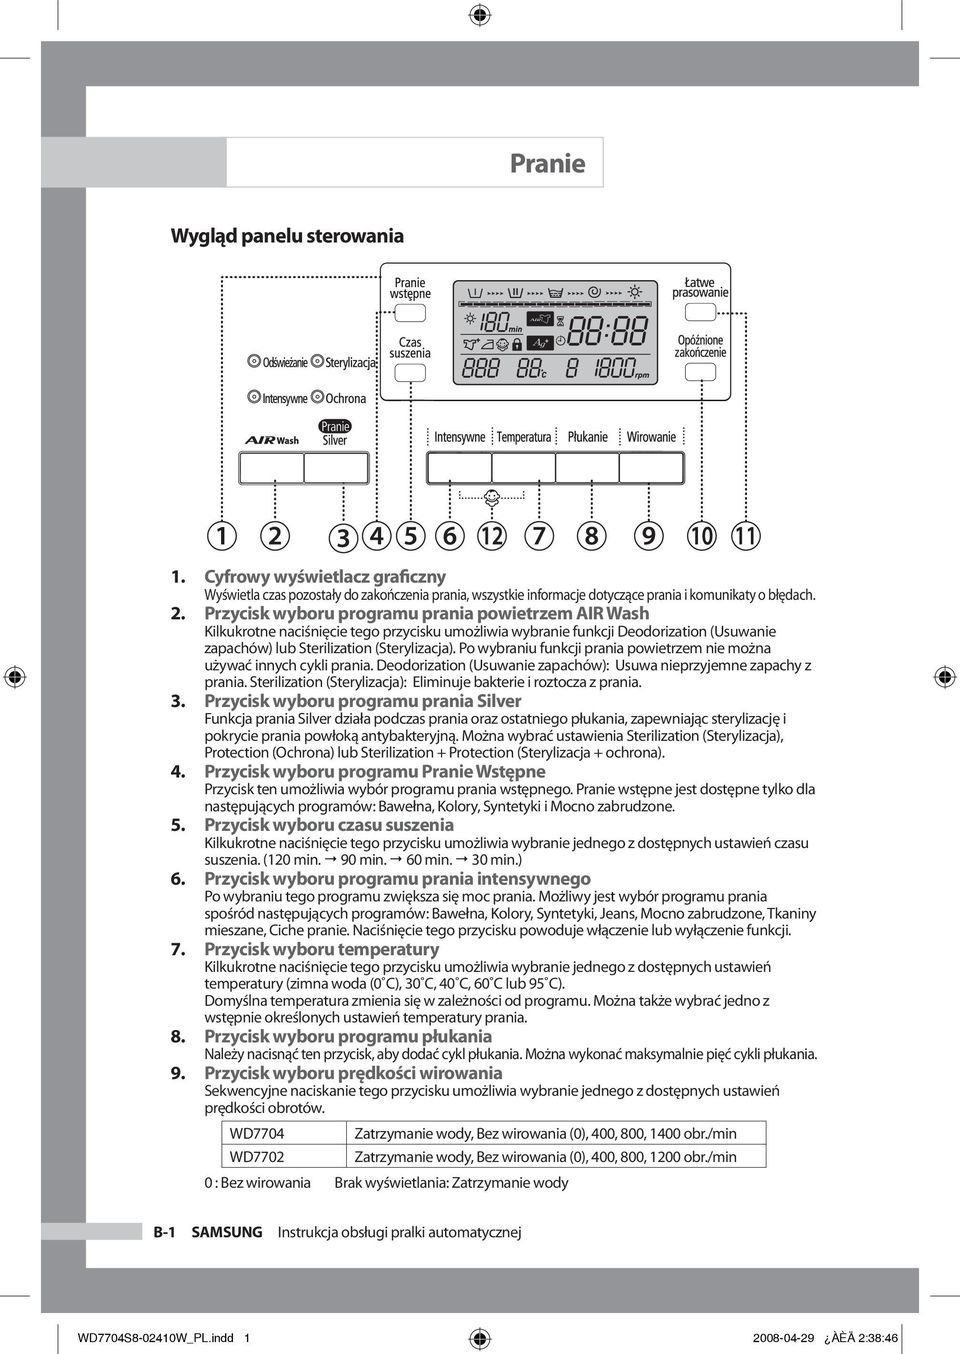 Instrukcja obsługi pralki automatycznej - PDF Darmowe pobieranie